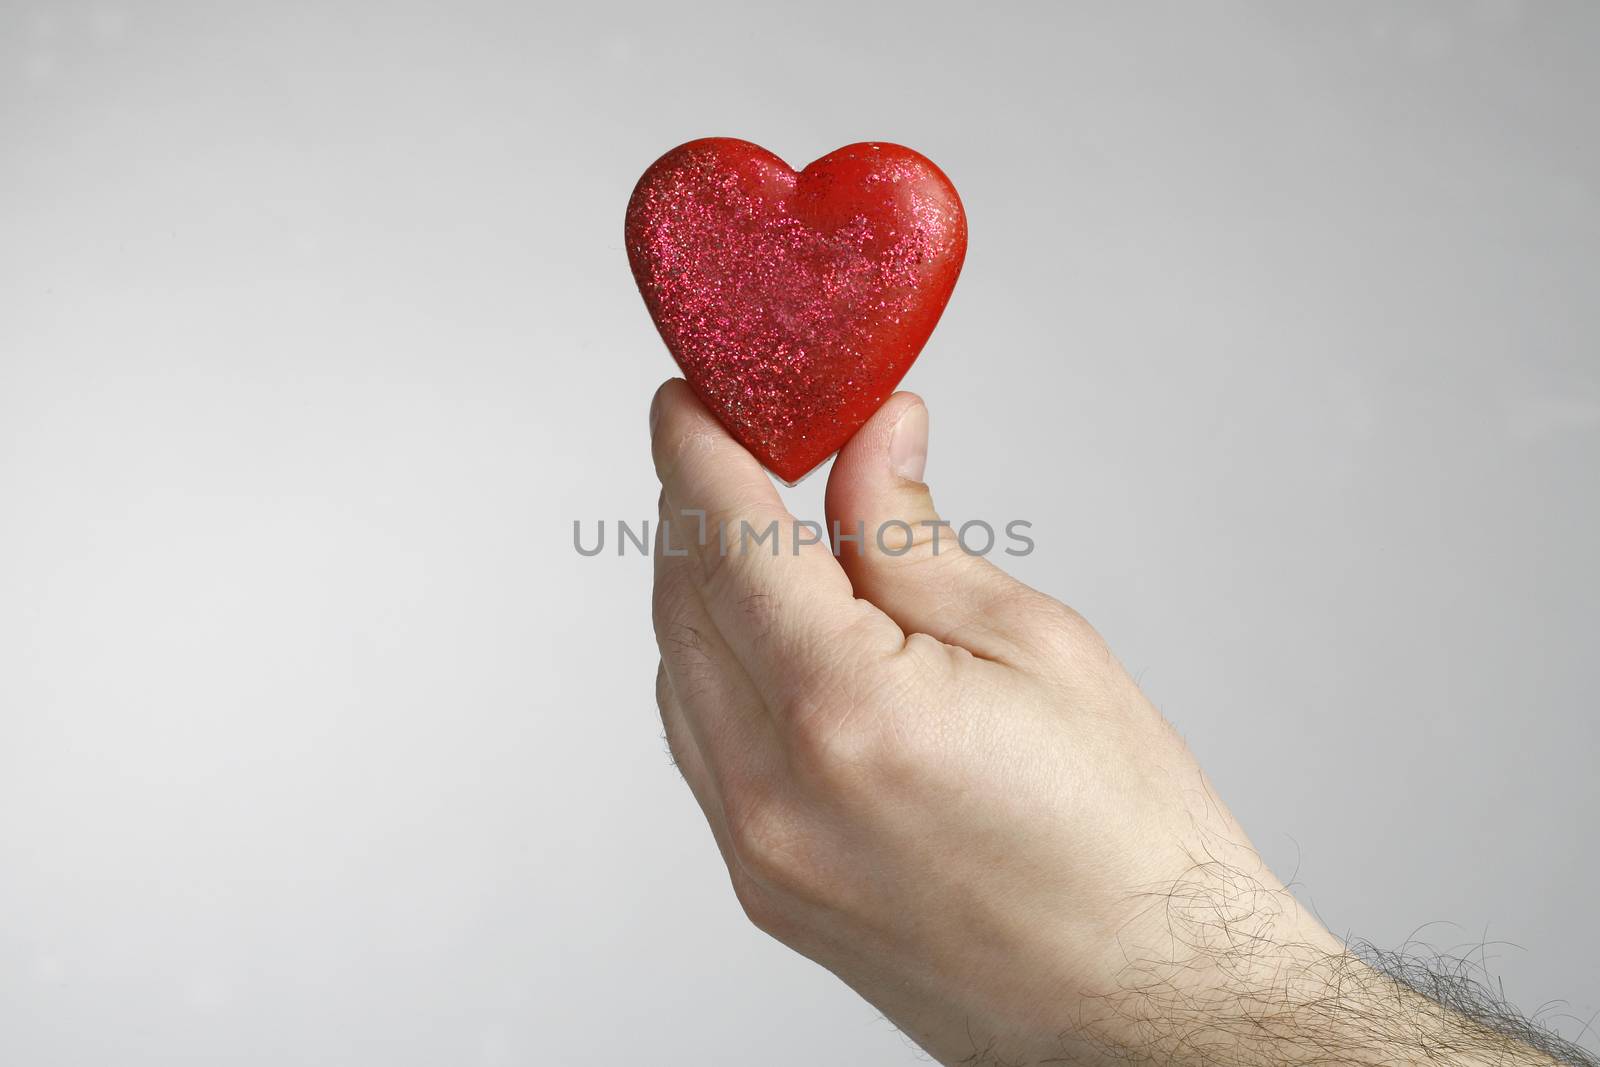 Heart in hand by nemar74